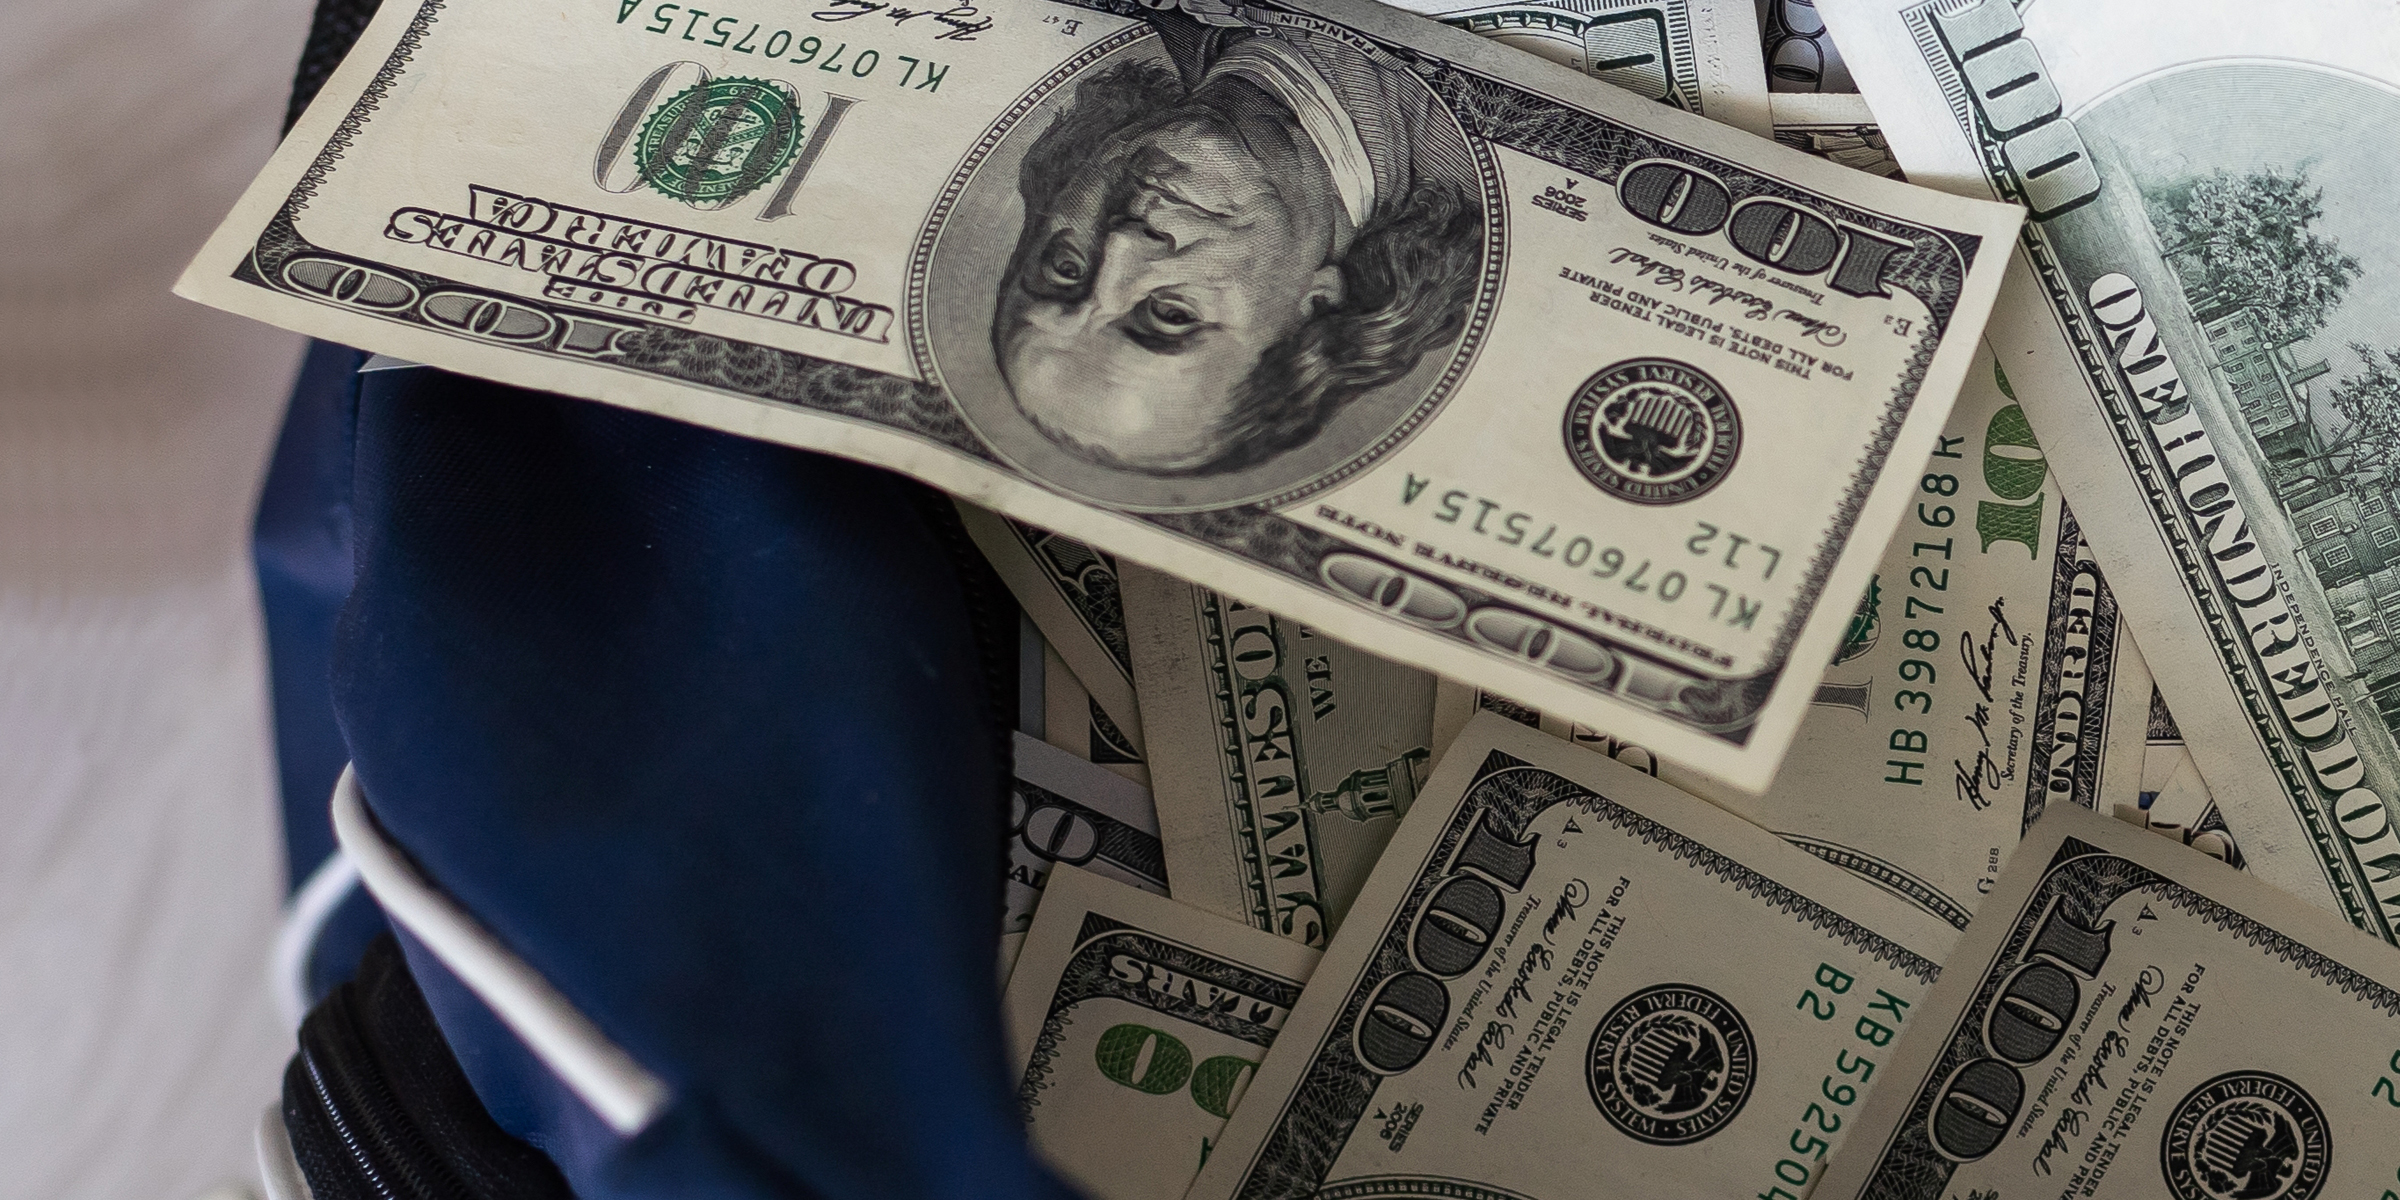 Fajos de dinero en una bolsa | Fuente: Shutterstock